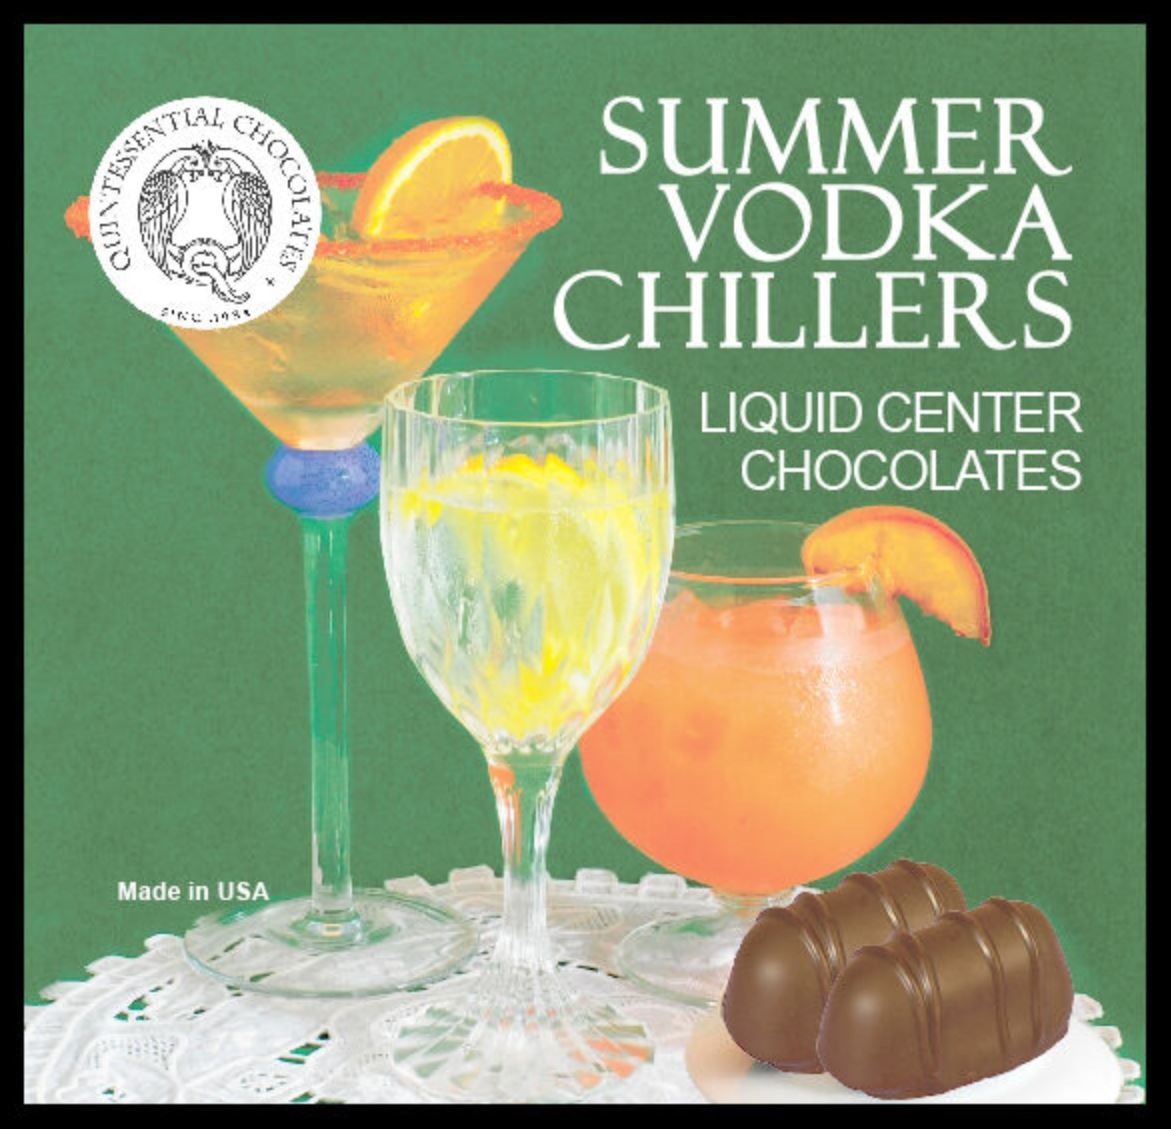 Summer Vodka Chillers Liquid Center Chocolate